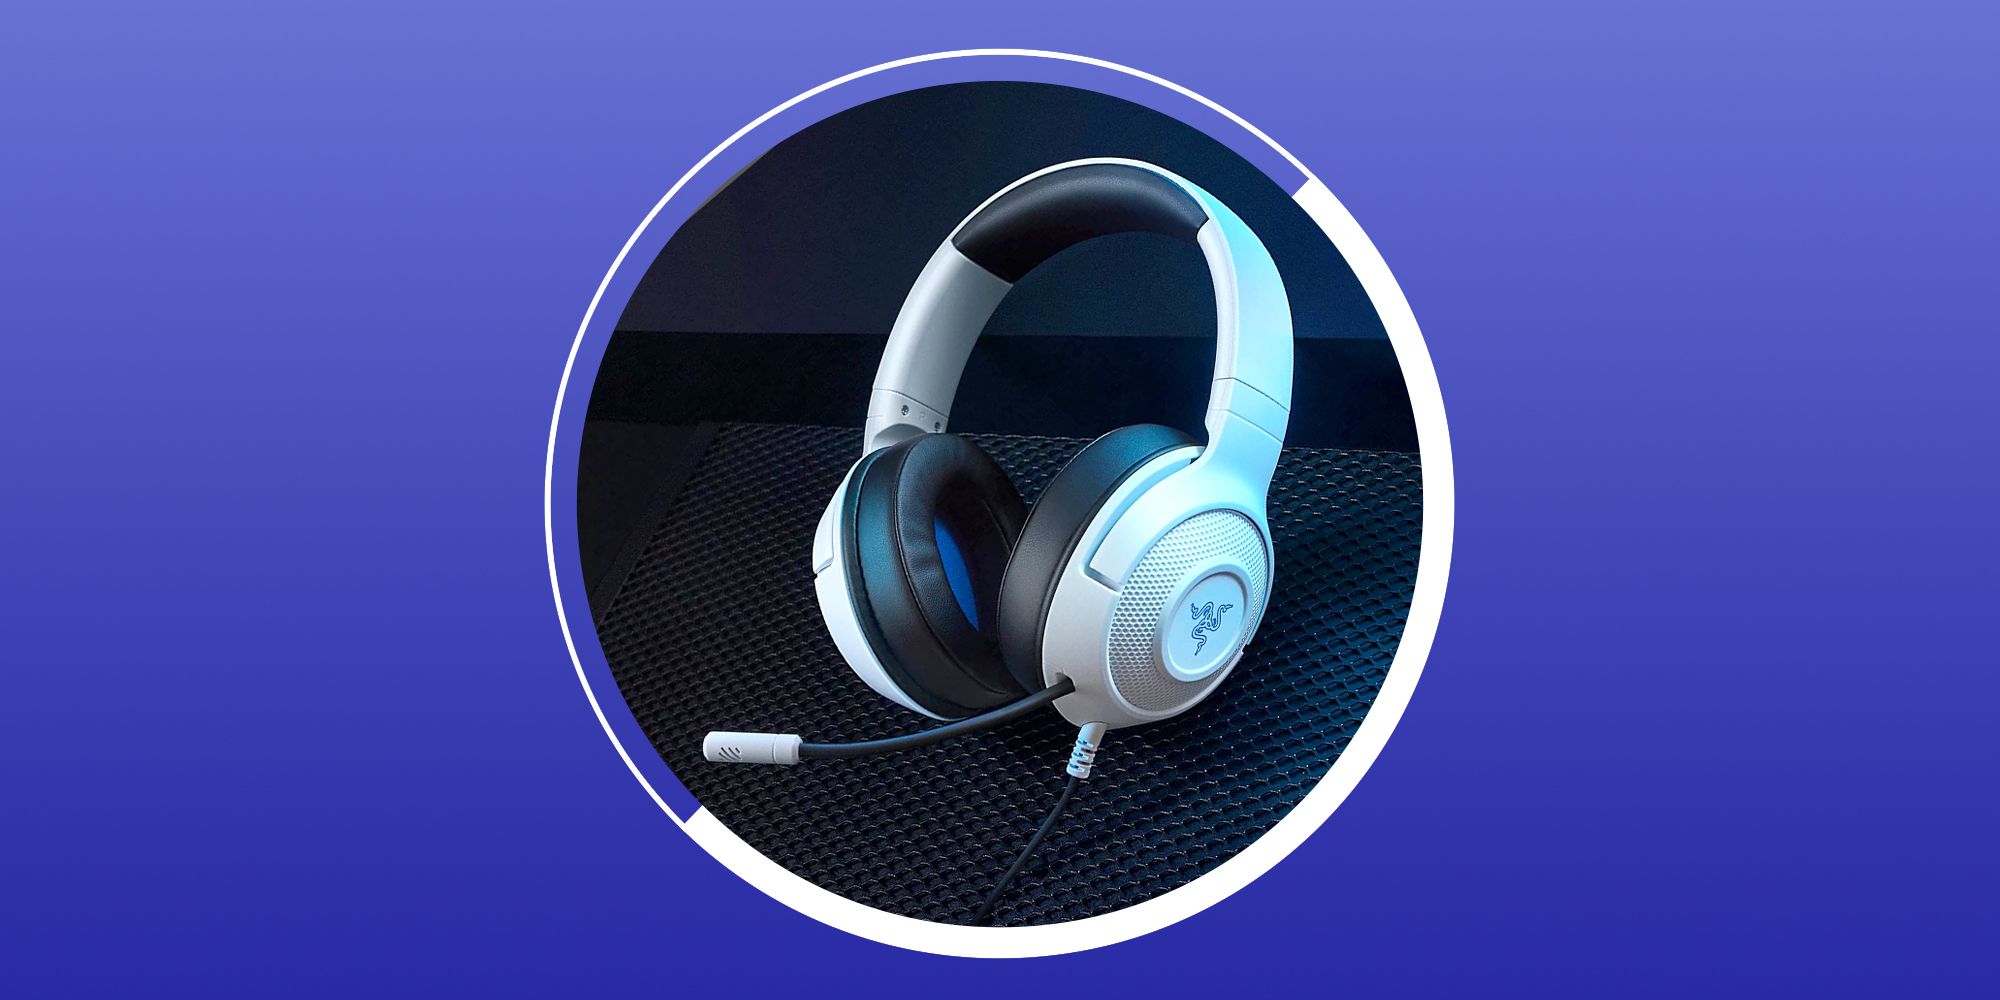 Hueco huella dactilar Animado 9 Best Gaming Headsets Under $100 - Cheap Gaming Headset 2023